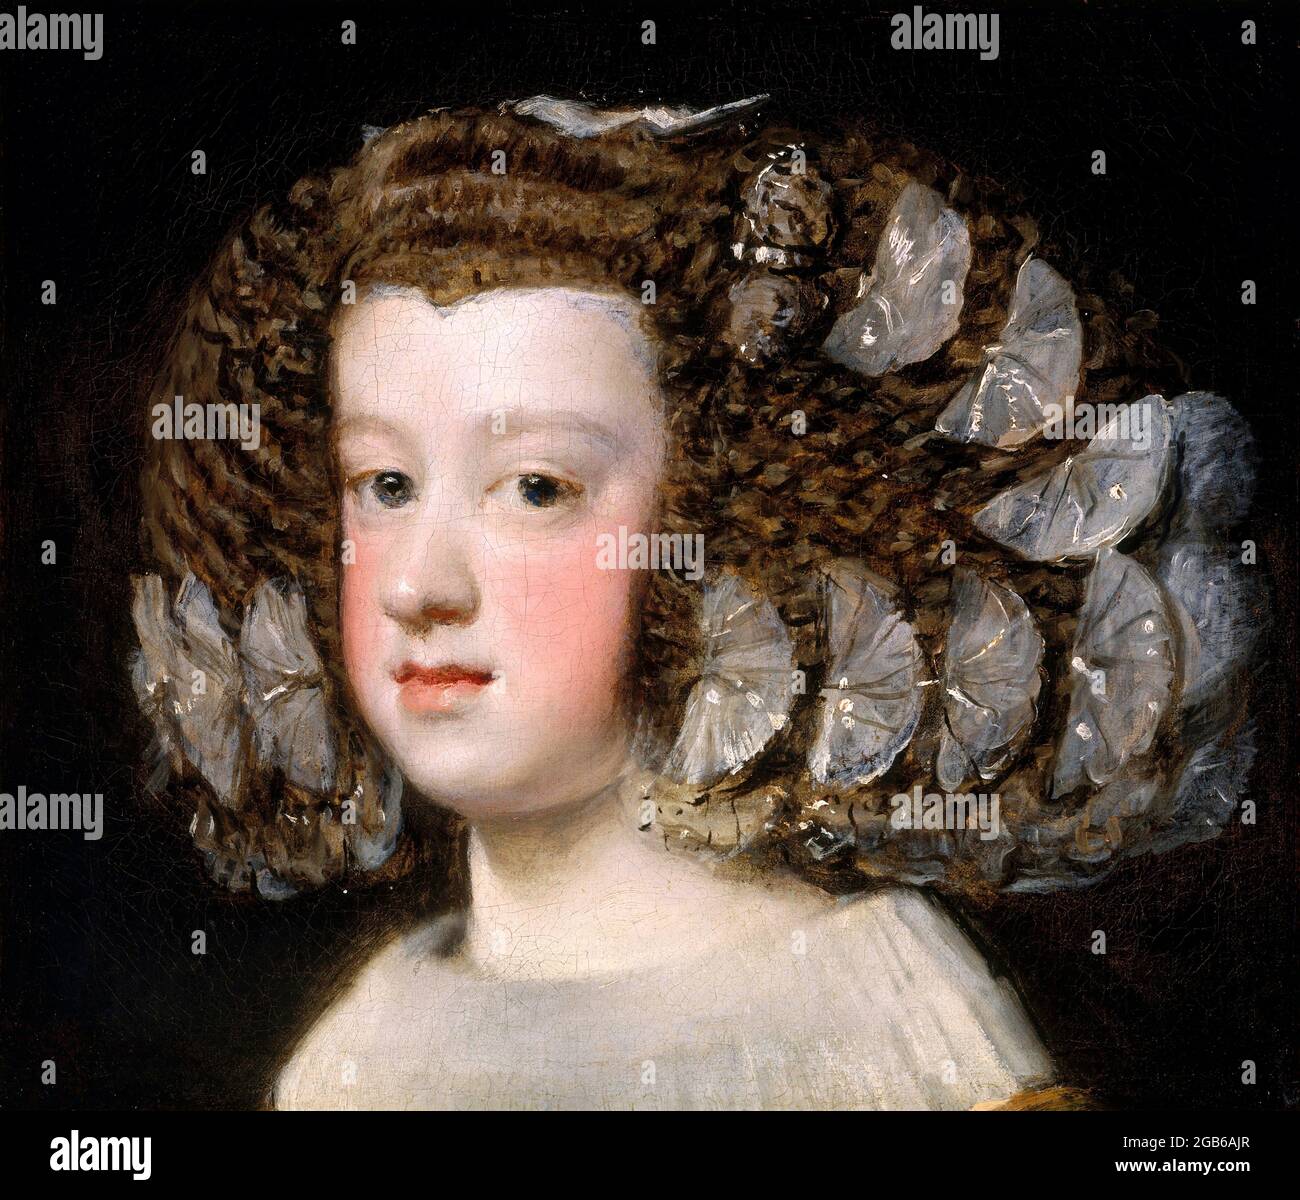 María Teresa (1638-1683), Infanta d'Espagne par Diego Velazquez (1599-1660), huile sur toile, 1651-54 Banque D'Images